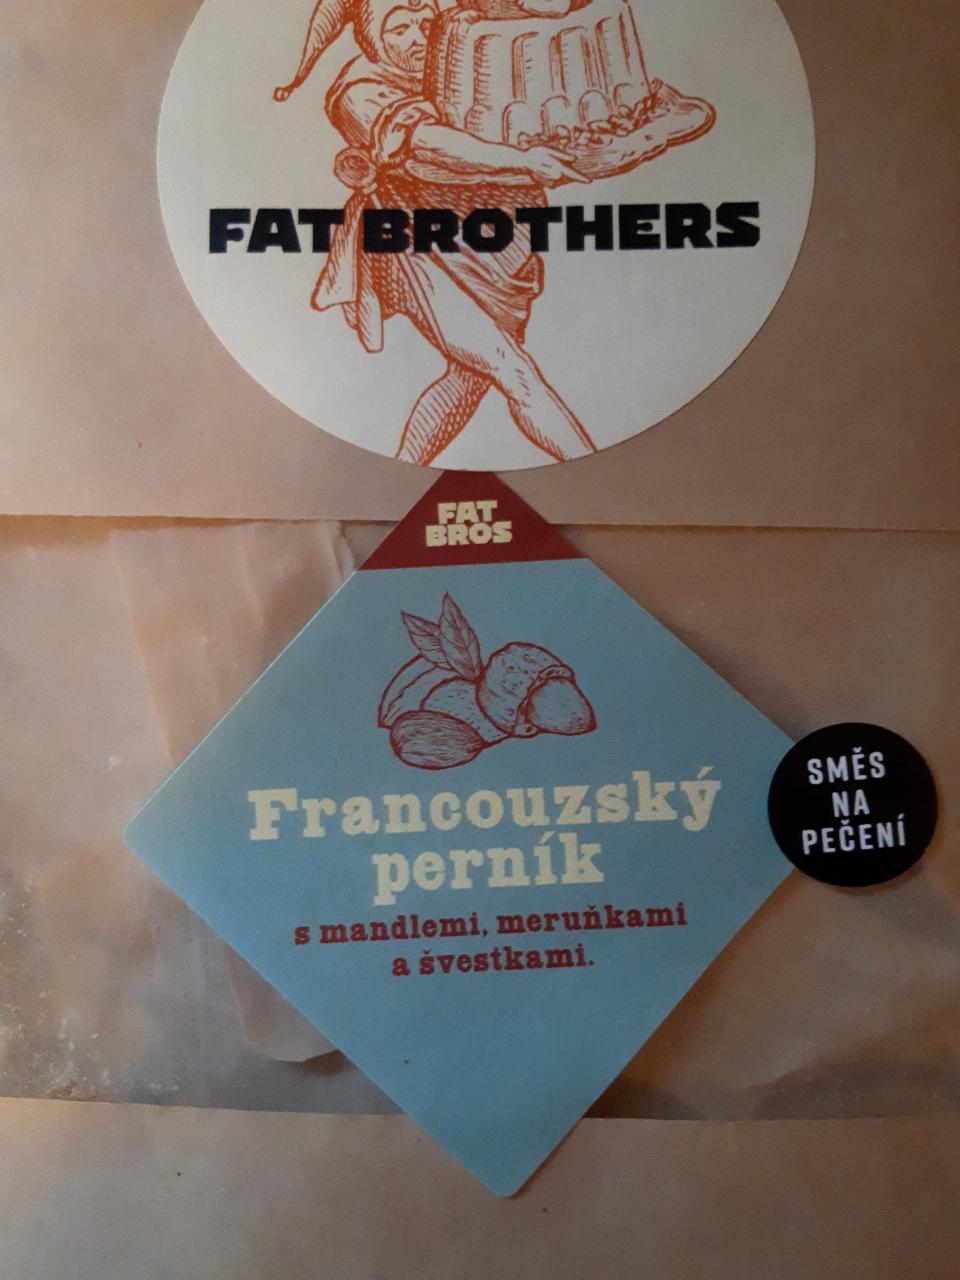 Fotografie - Francouzský perník směs na pečení Fat Brothers